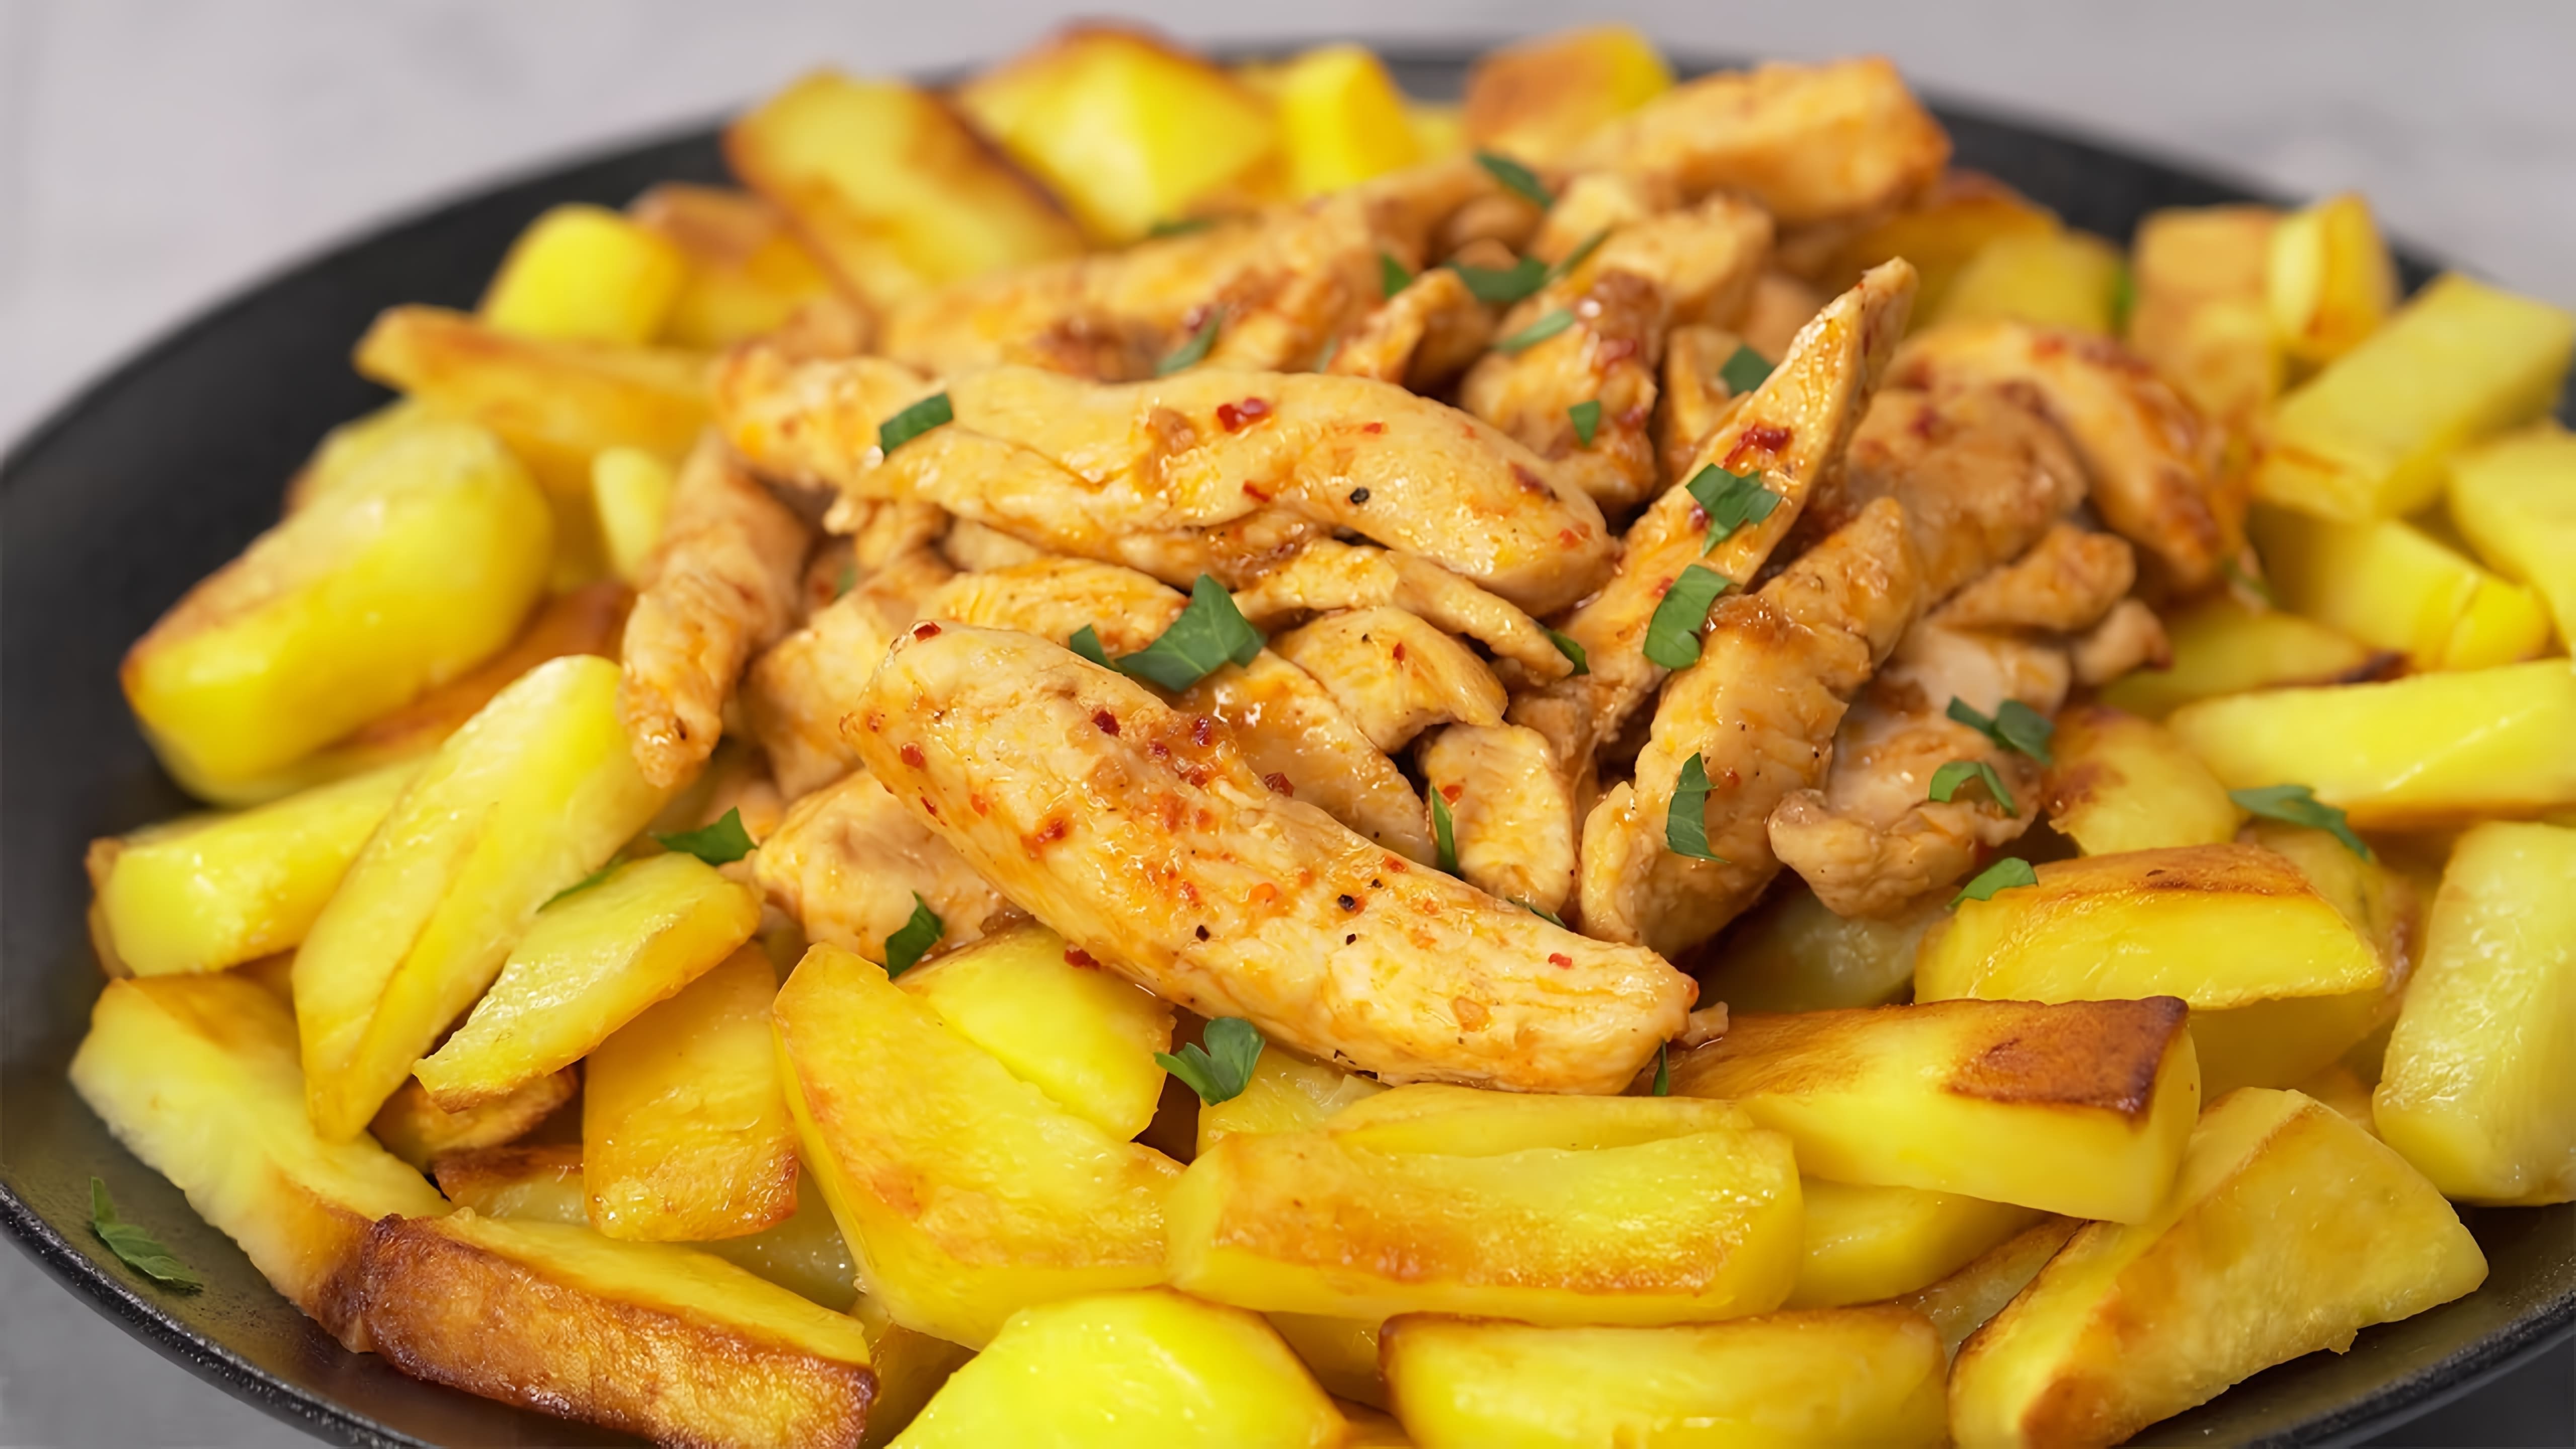 В этом видео демонстрируется рецепт приготовления жареной картошки с курицей